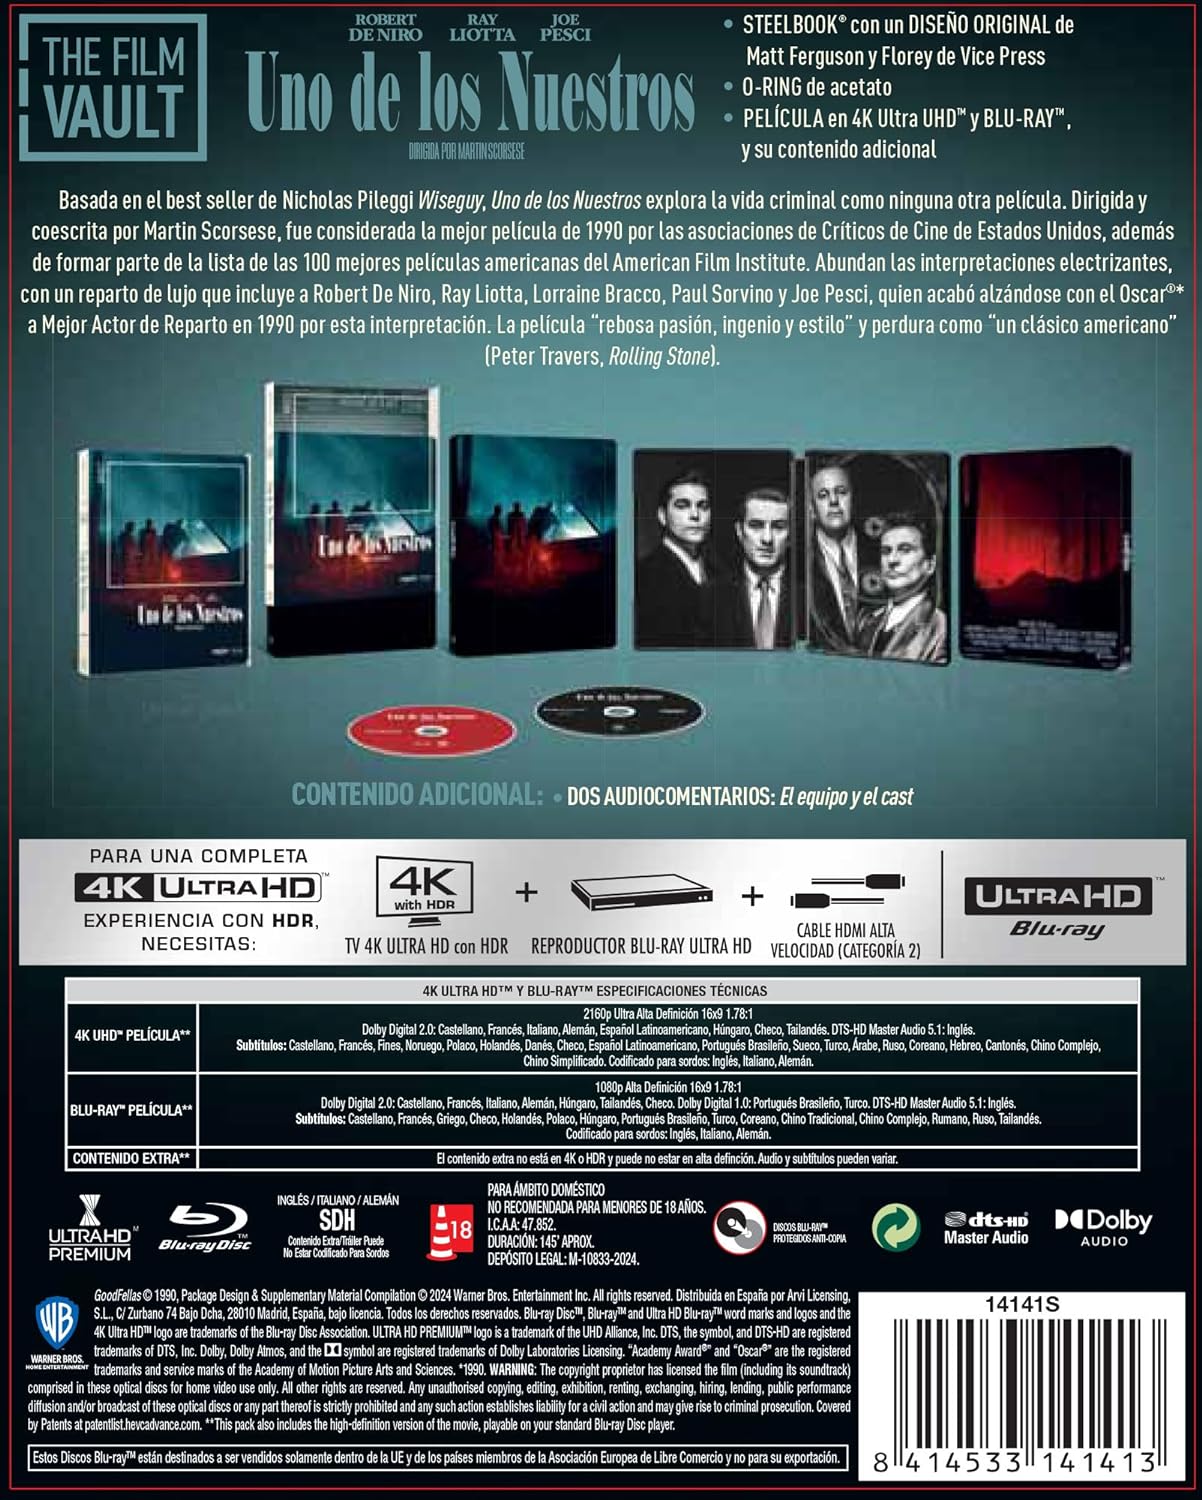 Uno de los Nuestros - The Film Vault (Edición Metálica) 4K UHD + Blu-Ray